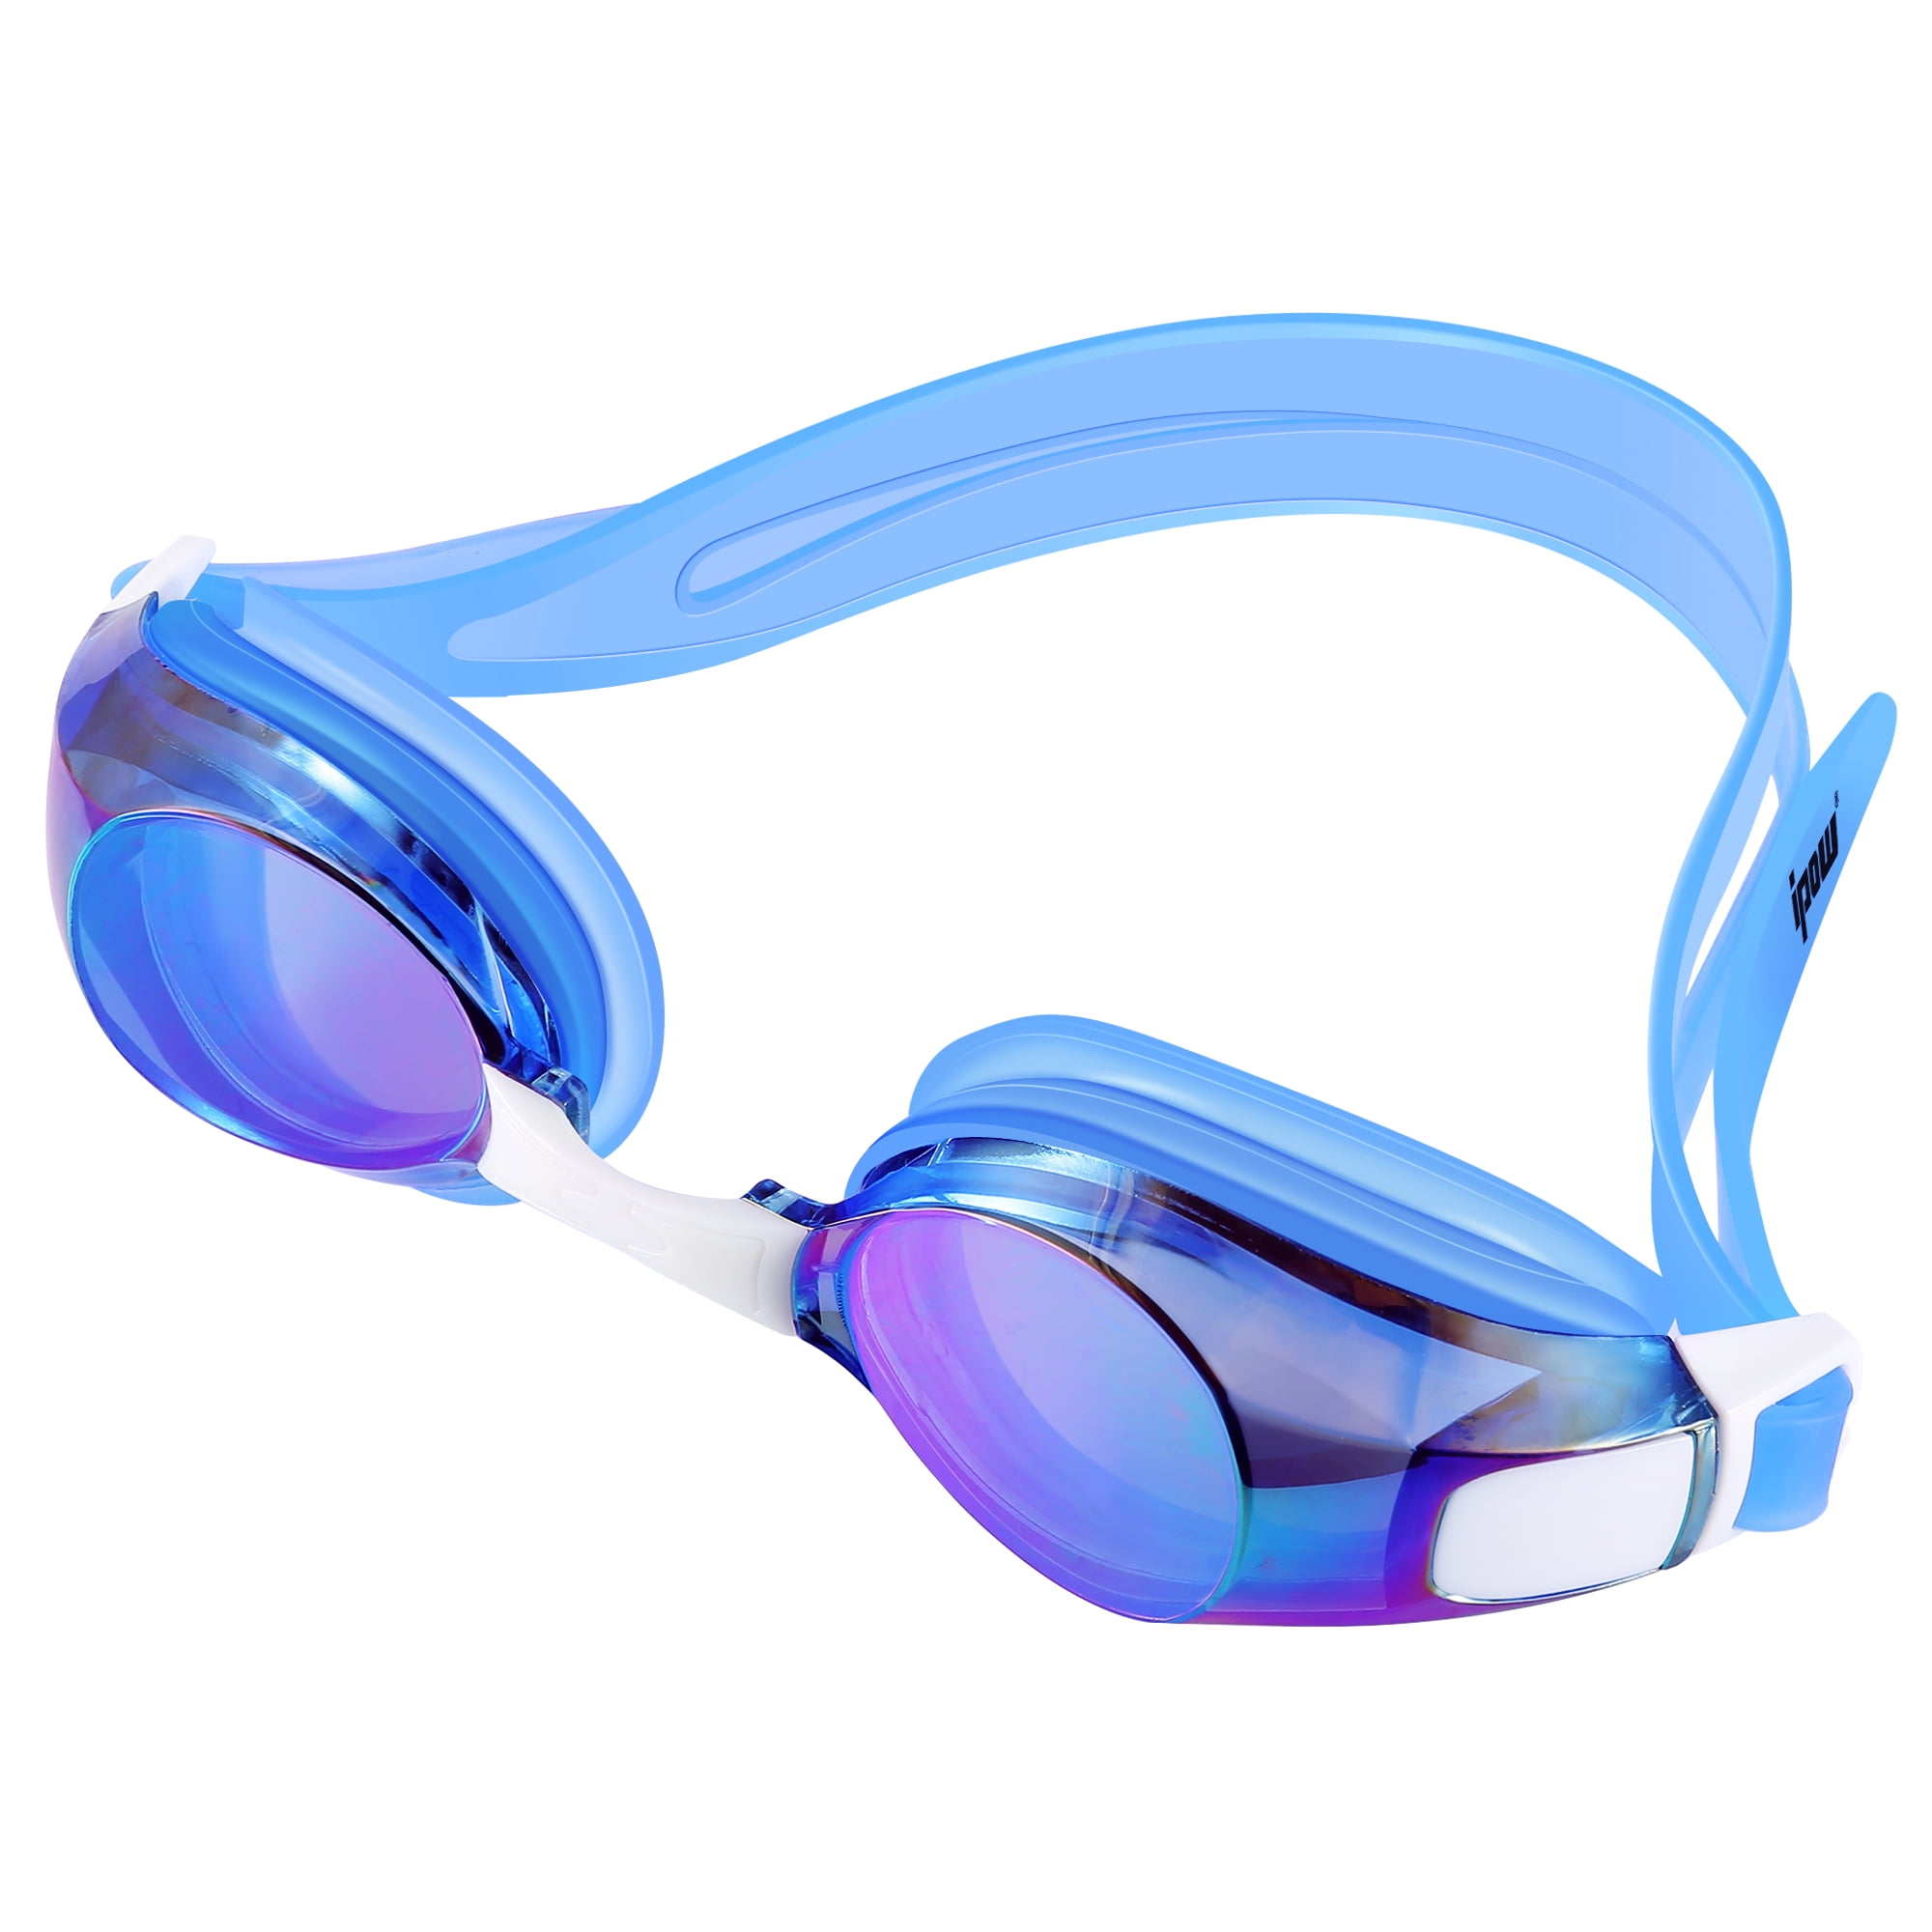 Waterproof Anti Fog Swimming Goggles For Boys Girls Swim Goggle Swim Eyewear